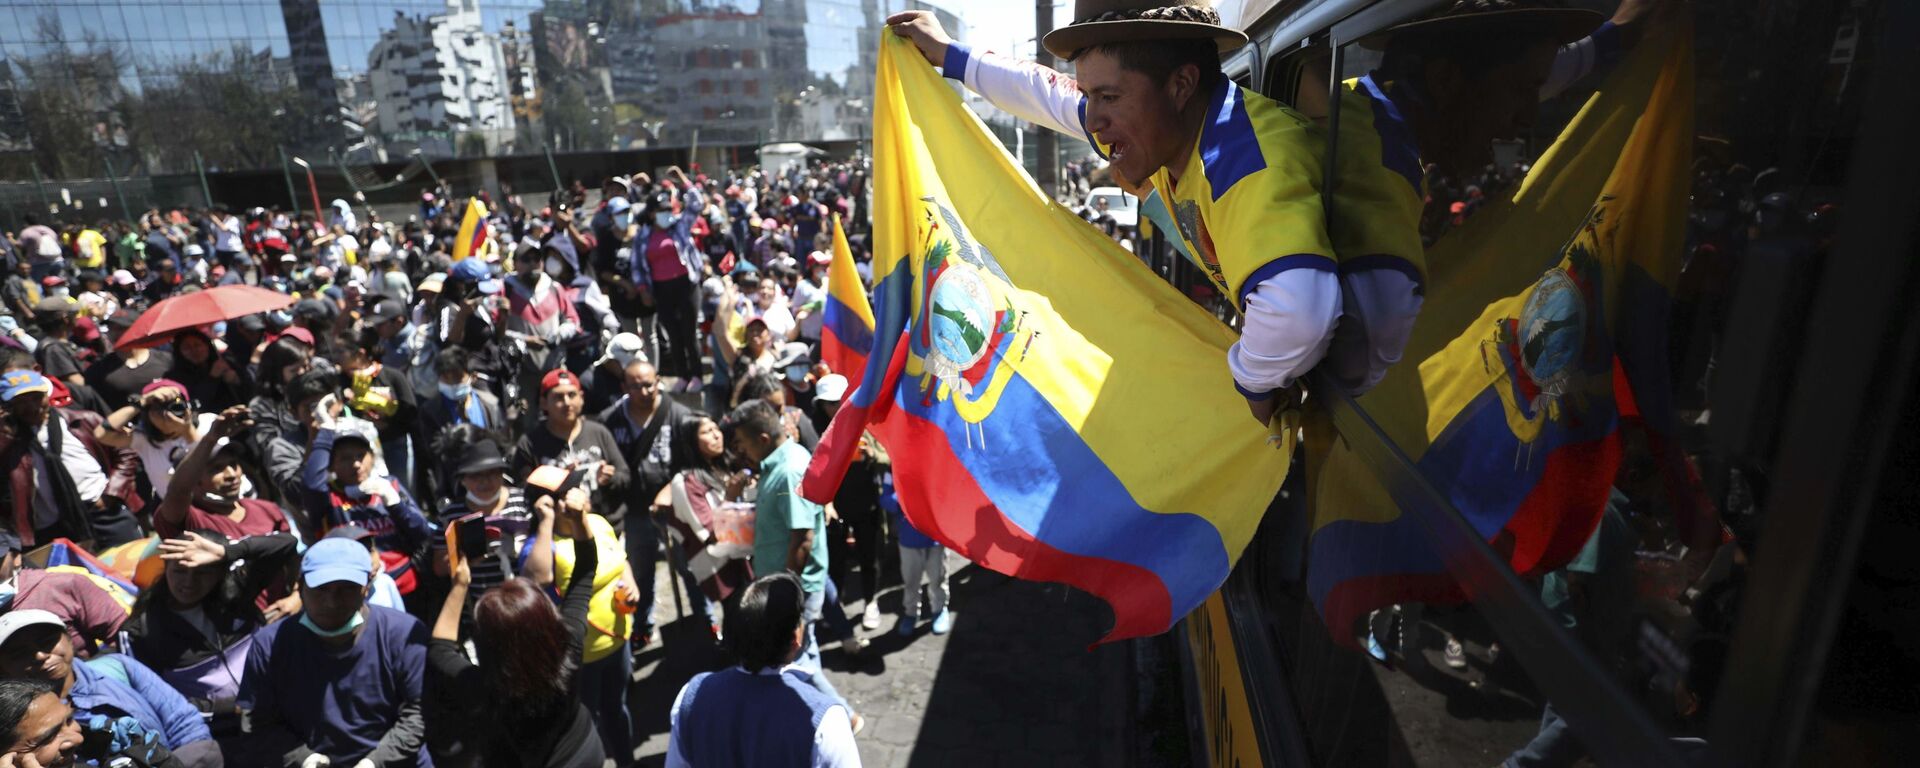 Indígenas ecuatorianos protestas durante la crisis política de octubre de 2019 en Ecuador - Sputnik Mundo, 1920, 06.10.2021